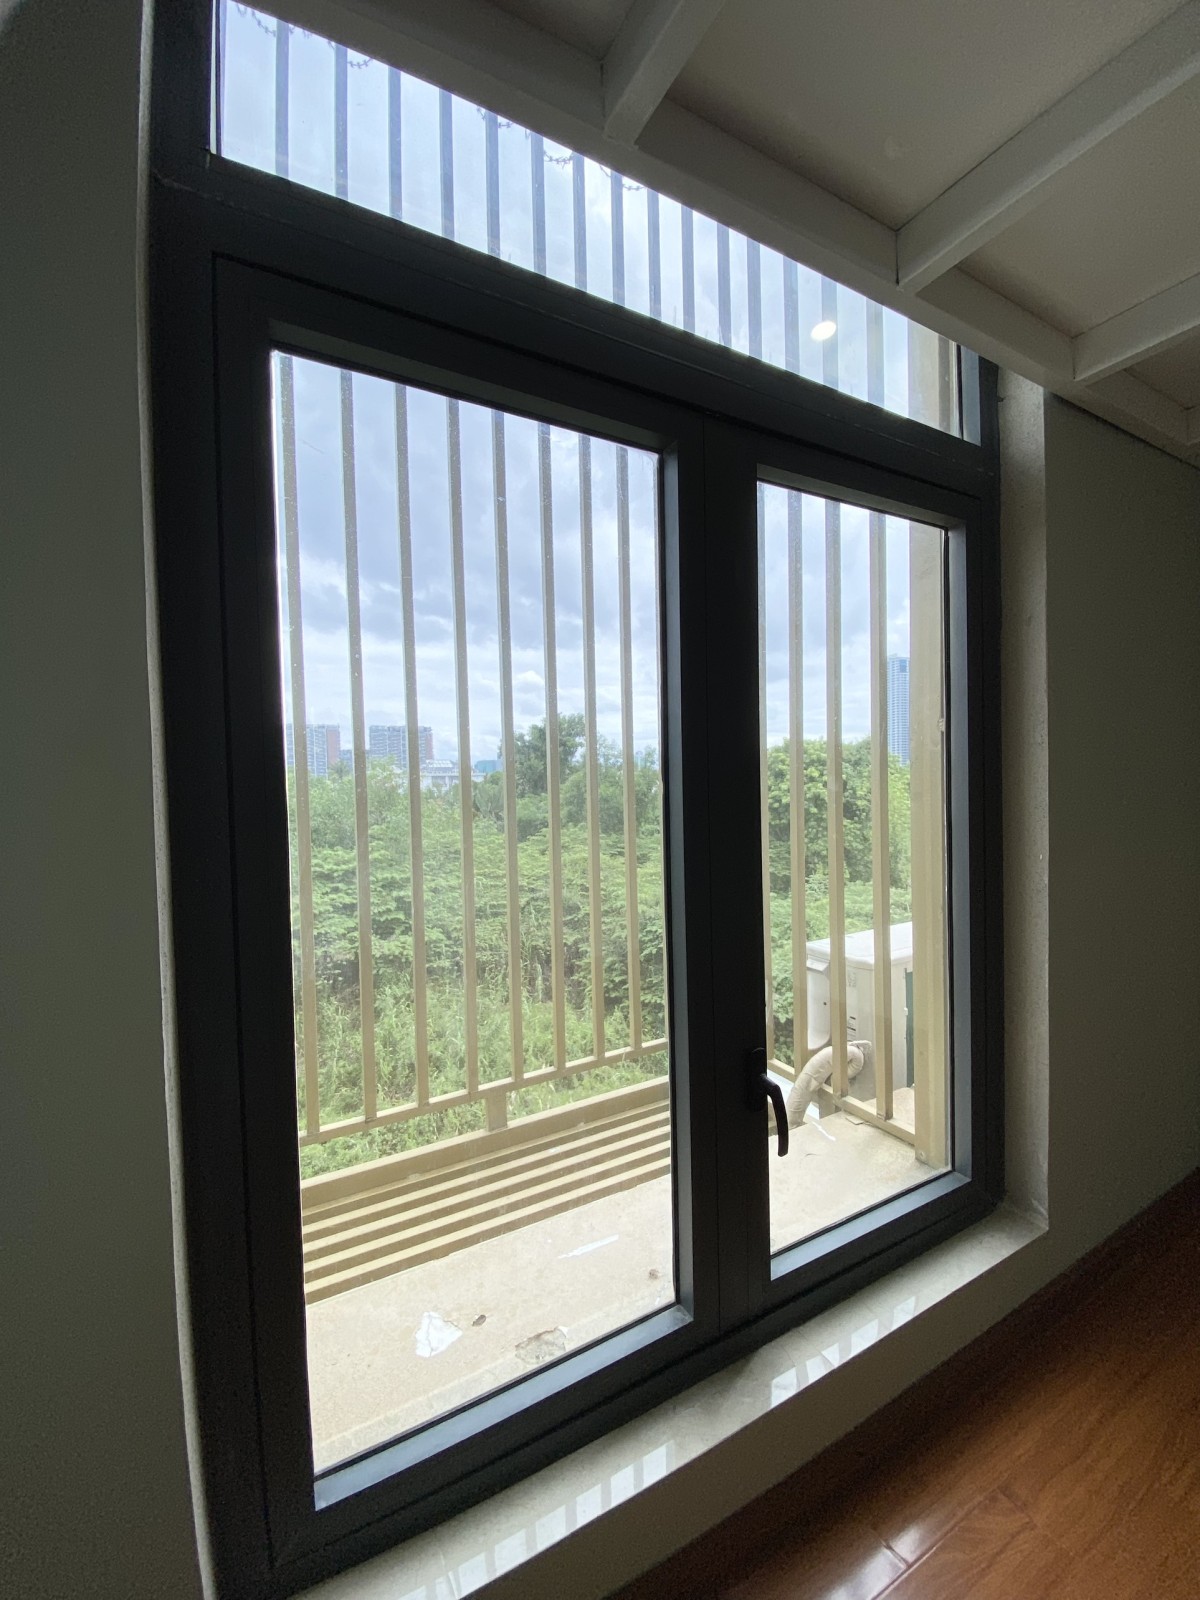 GIỮ PHÒNG QUA TẾT - Duplex full nội thất cửa sổ thoáng mát nằm trong khu biệt thự Bình An